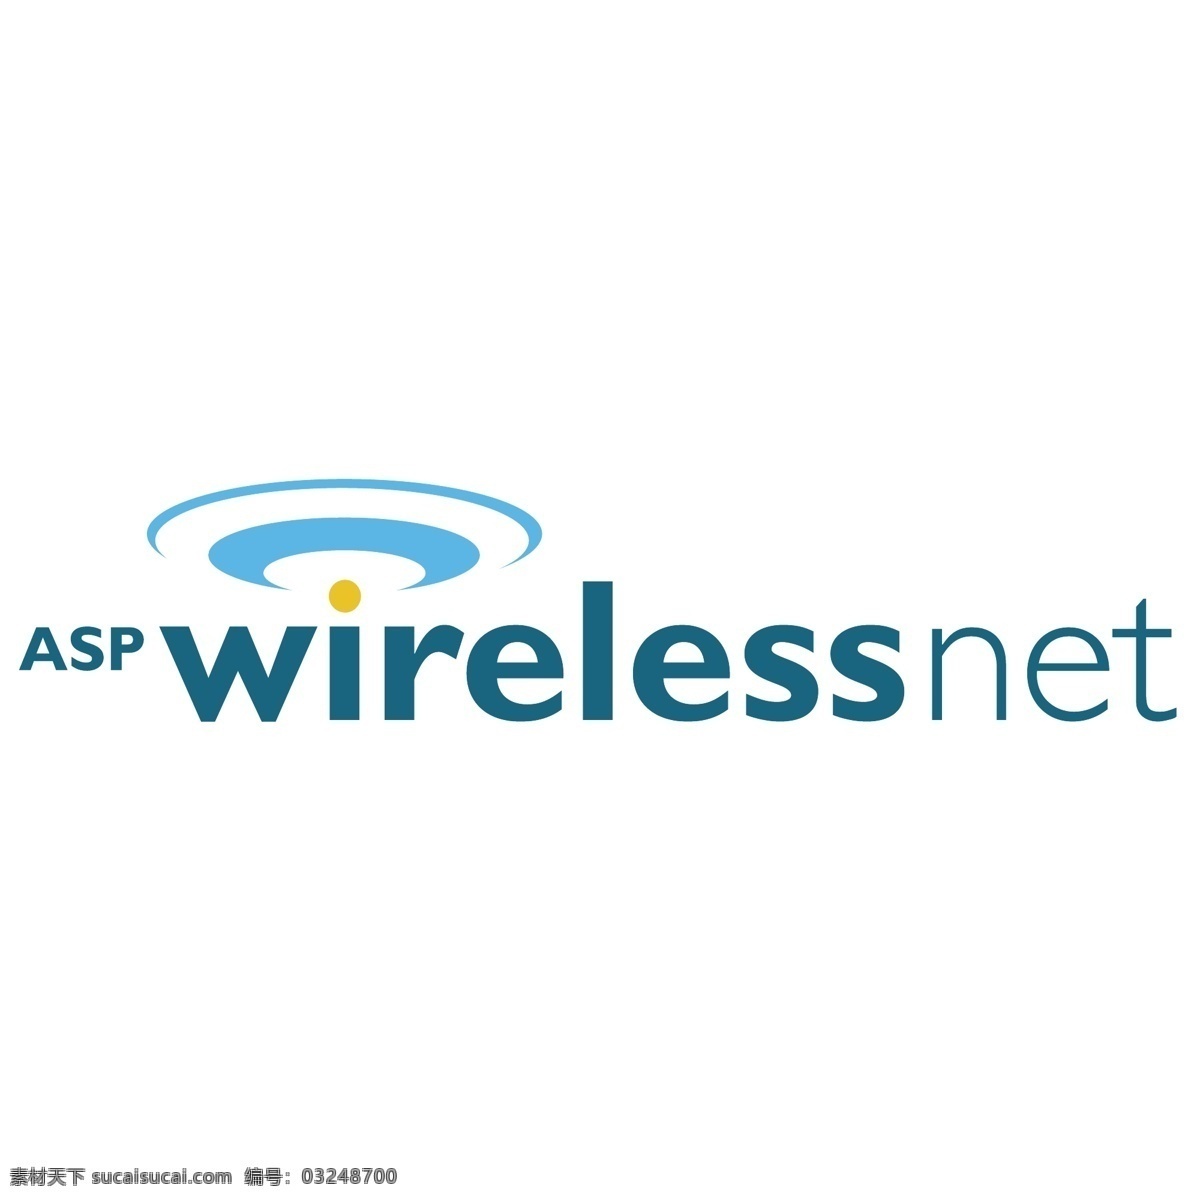 asp 无线网 免费 无线网络 标识 标志 psd源文件 logo设计